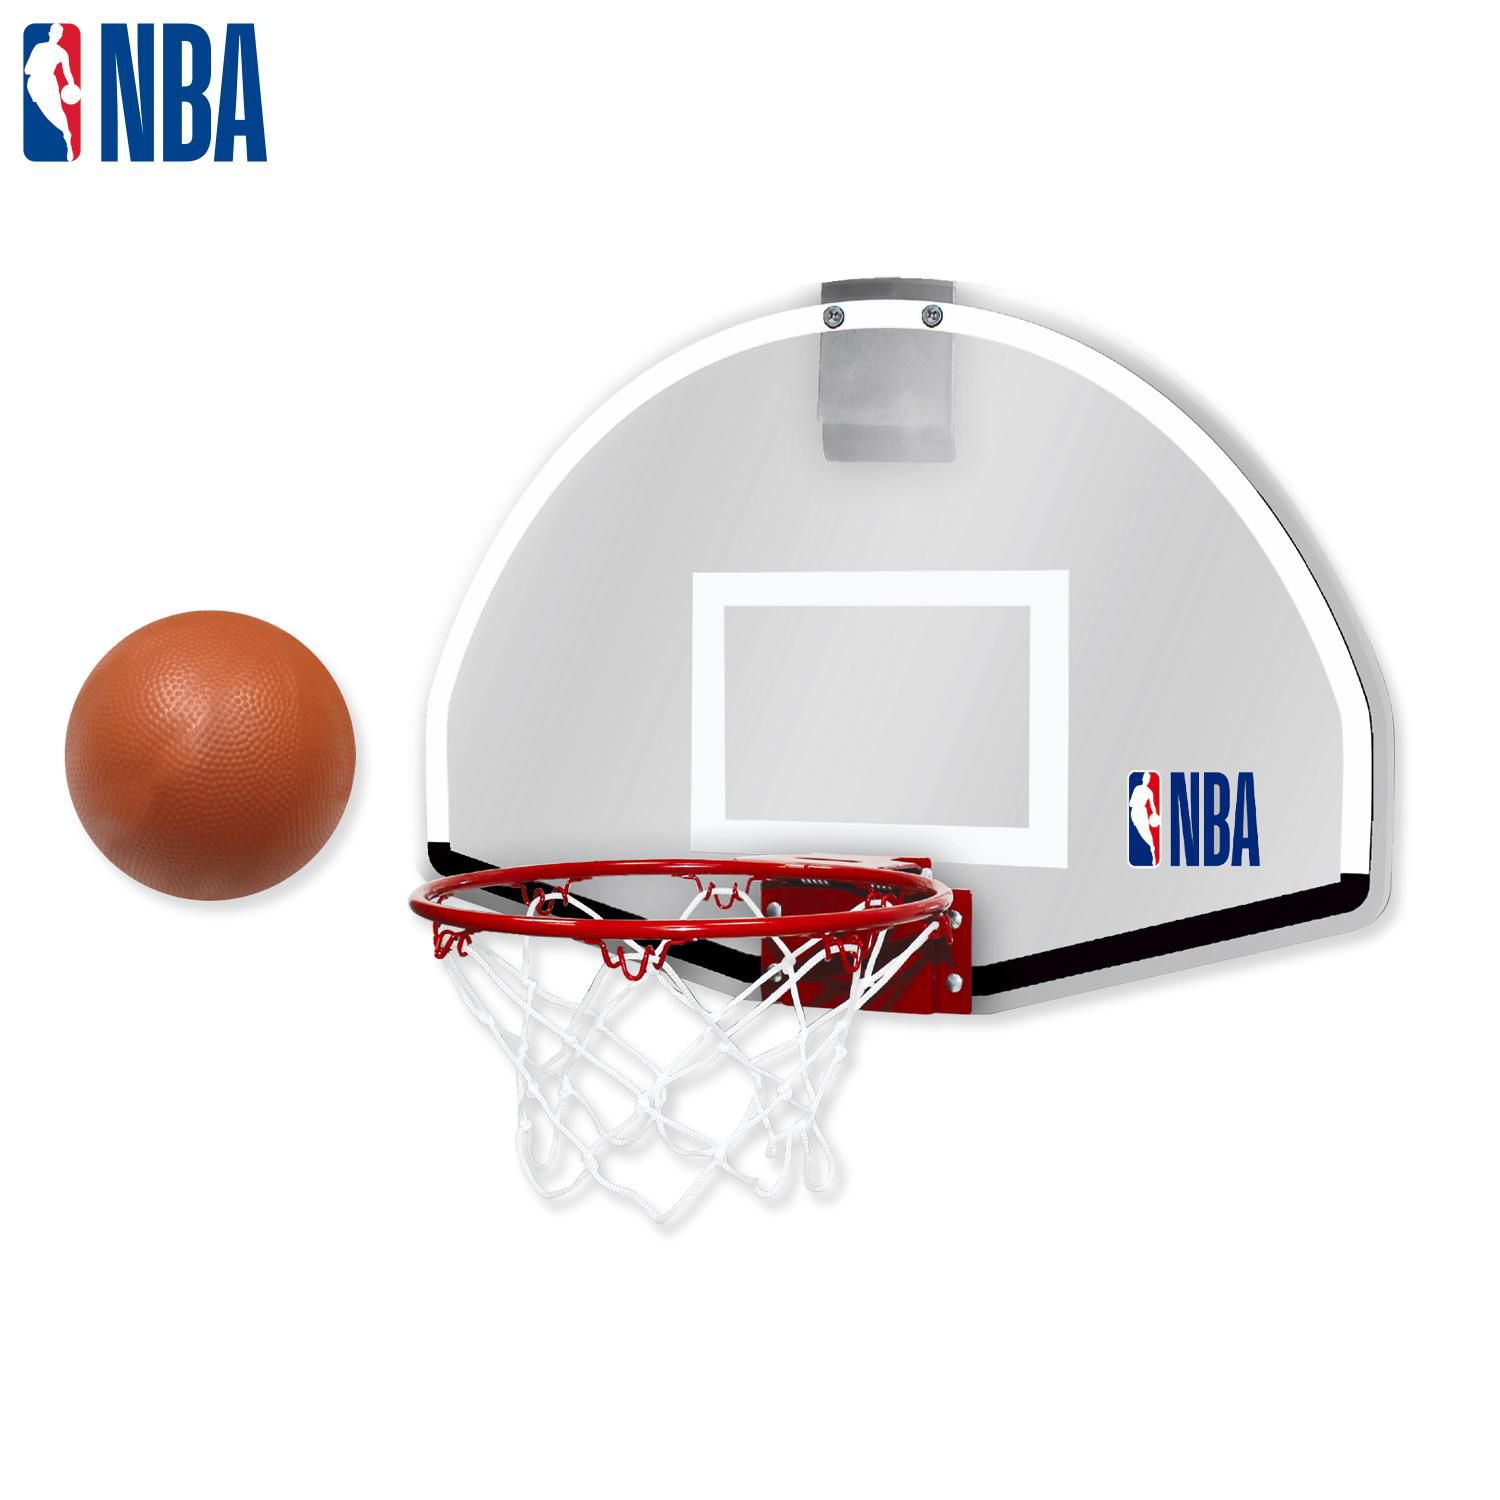 Mini Panier de Basket Enfant Interieur,Panier de Basket Mural